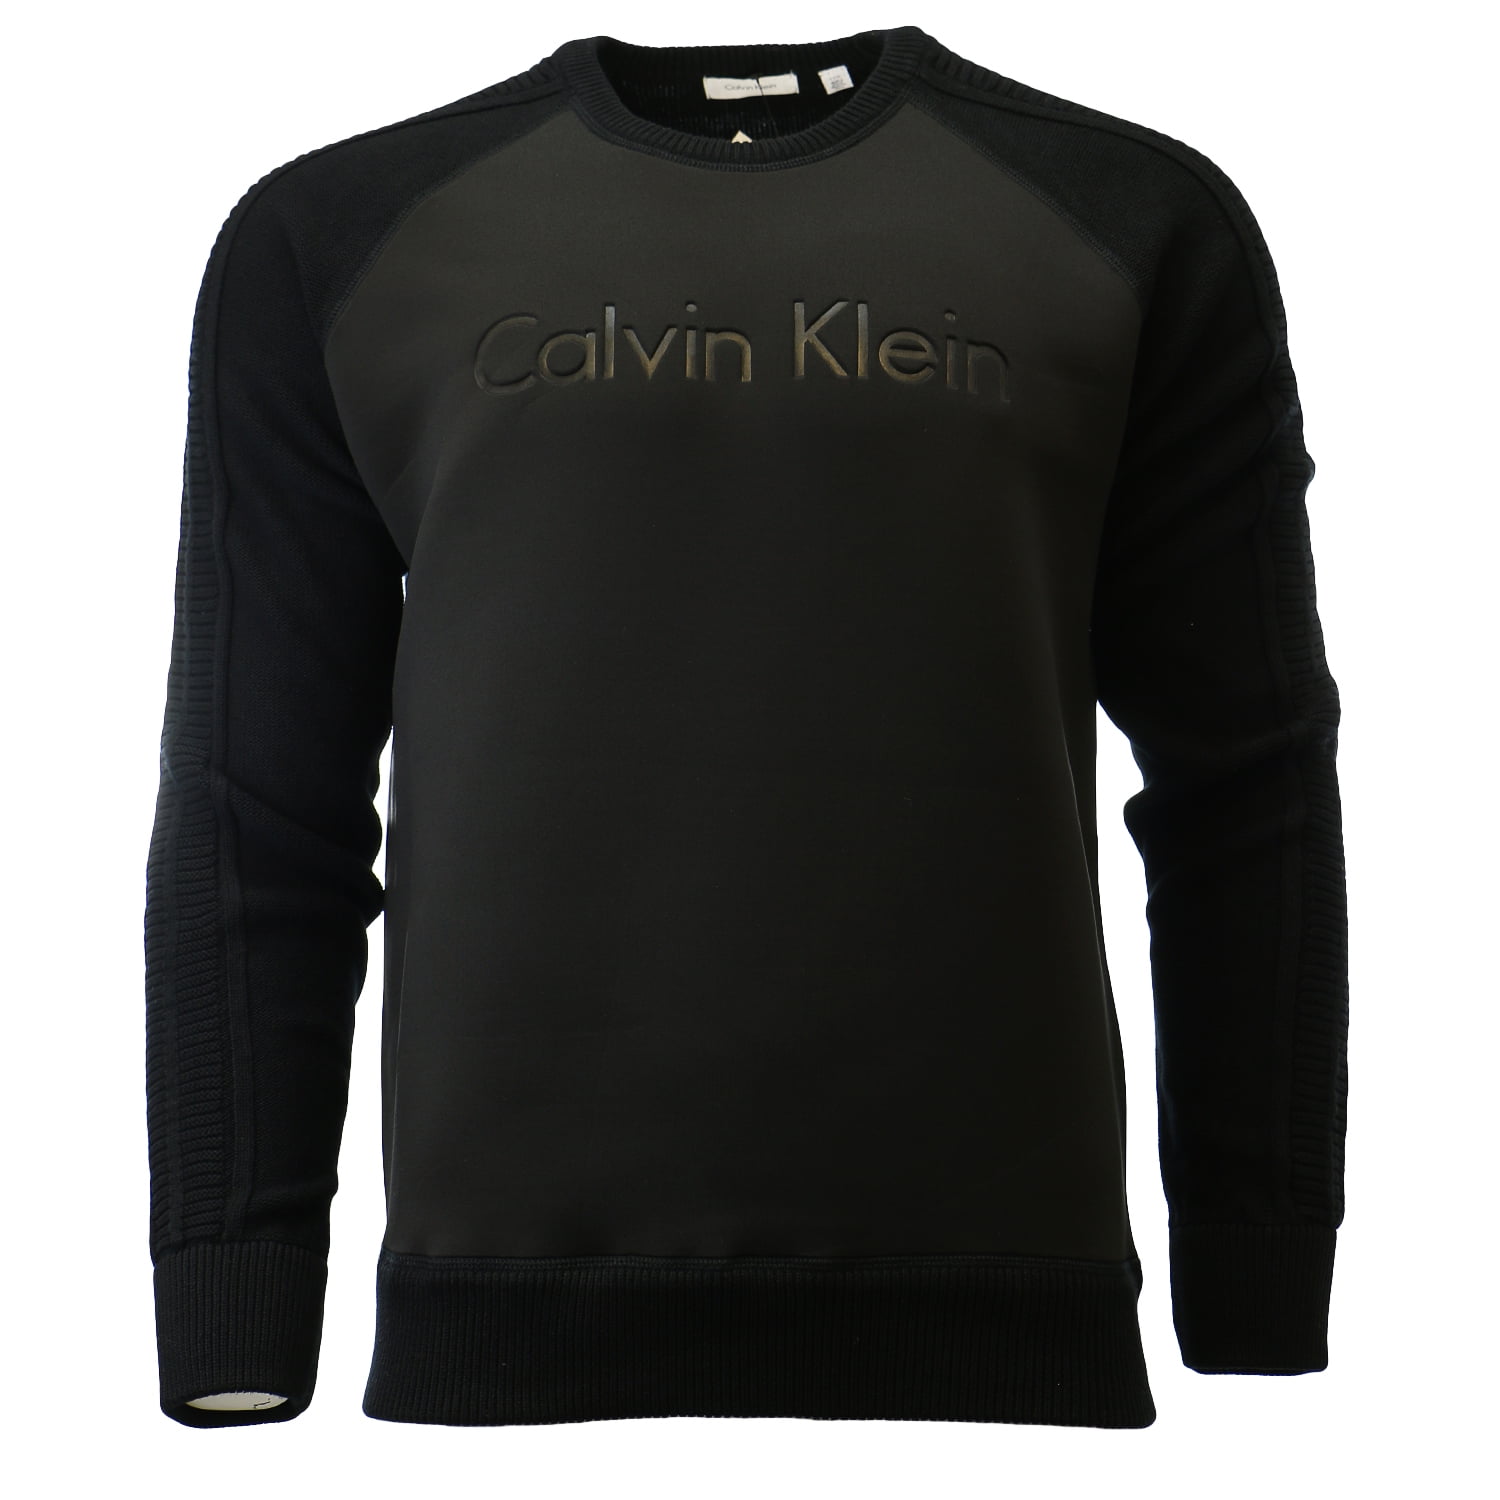 Calvin Klein - Calvin Klein Neoprene Mixed Media Logo Crew Neck ...